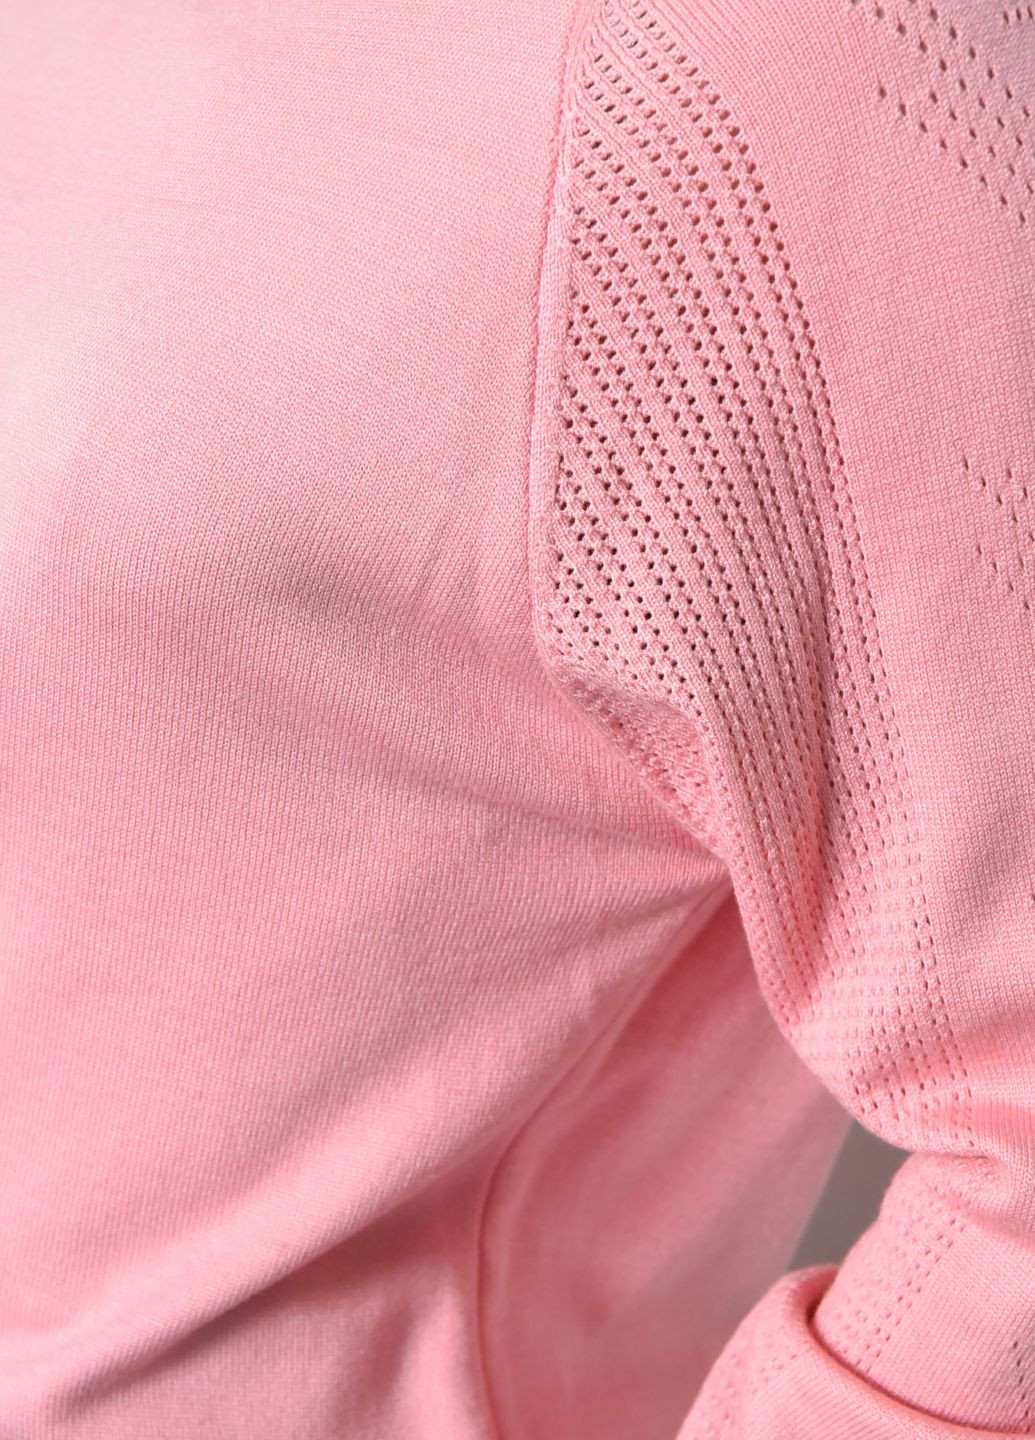 Світло-рожевий демісезонний светр жіночий світло-рожевого кольору пуловер Let's Shop